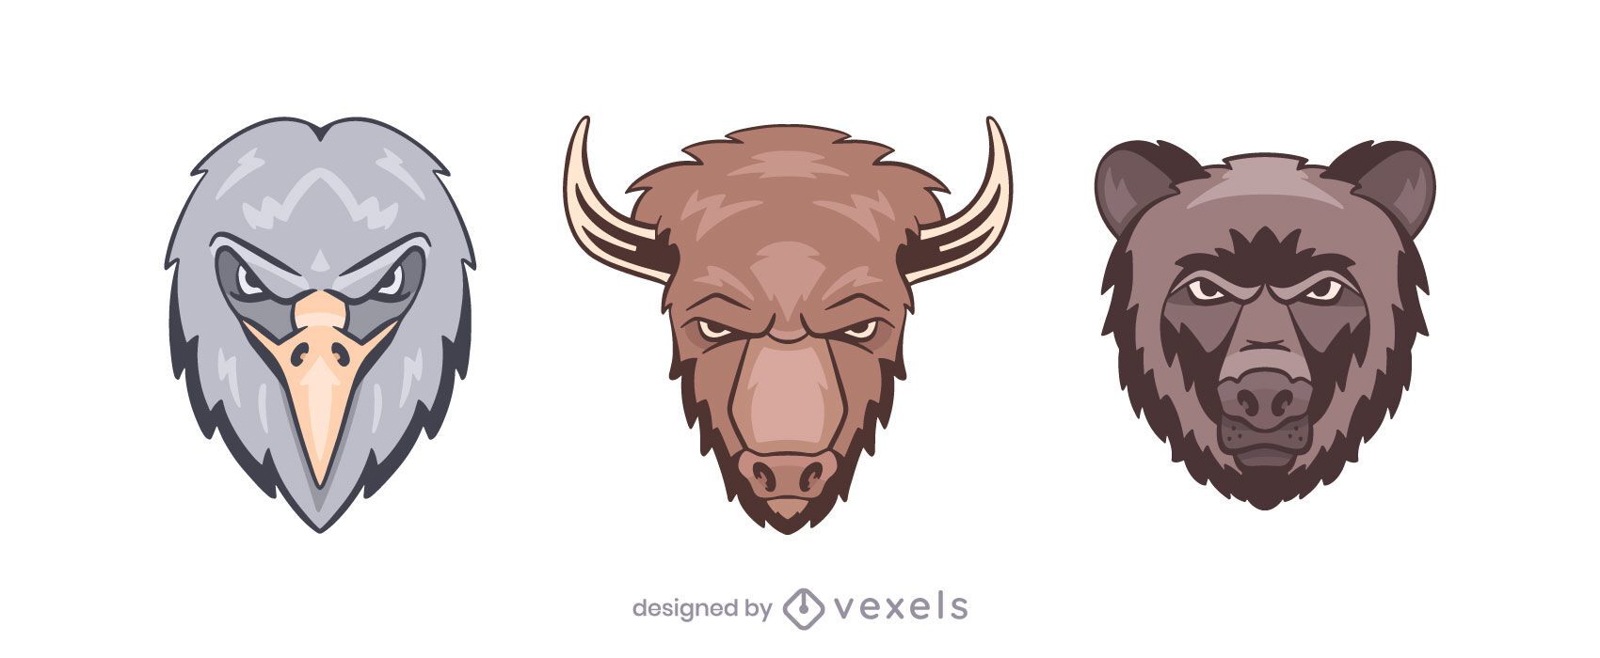 Eagle bison bear logo illustration set